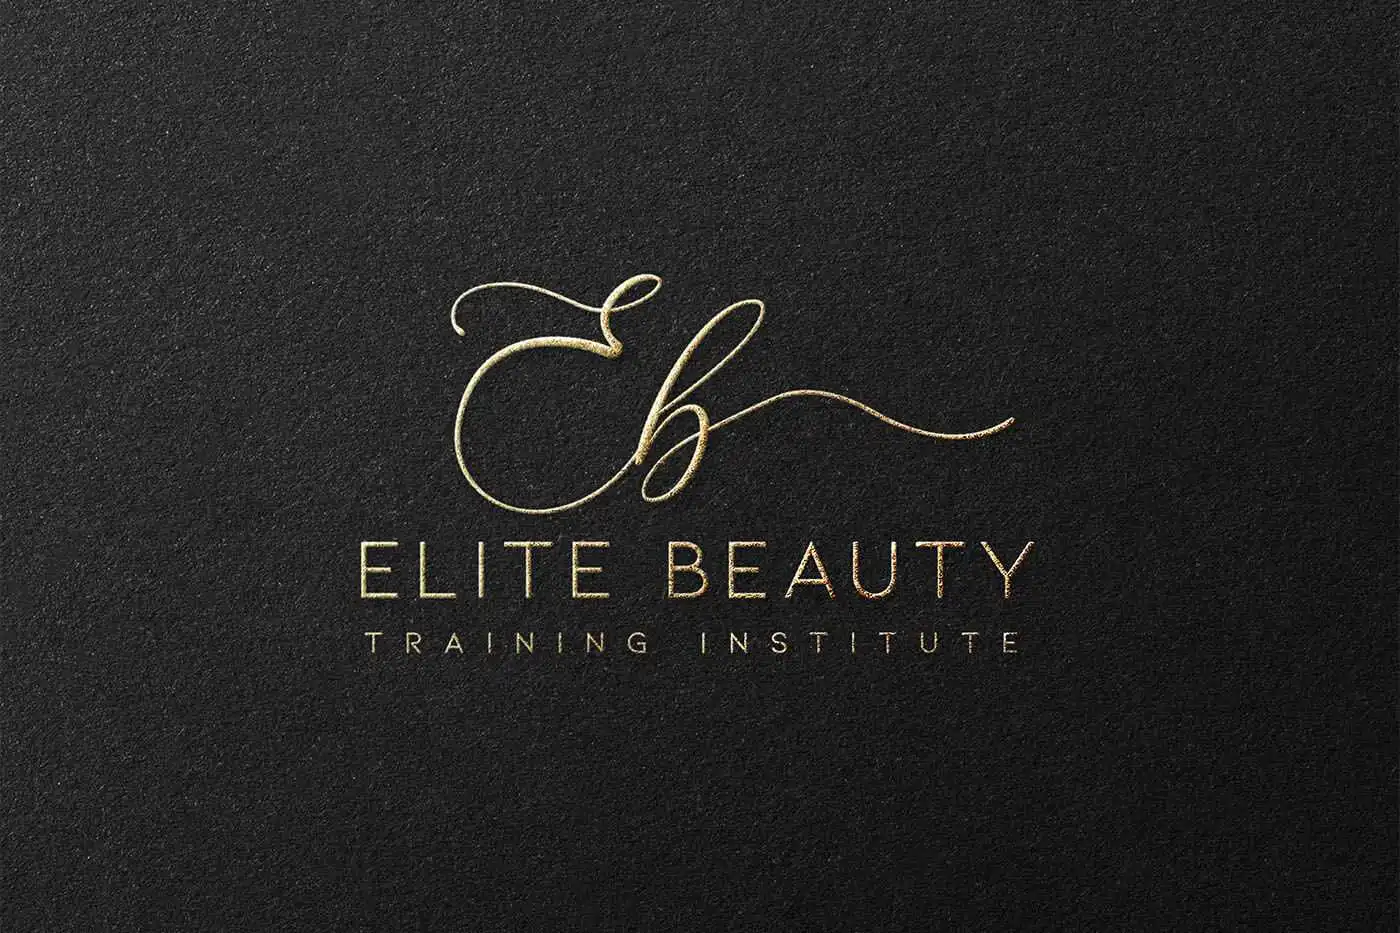 I-appreciate-a-tip-elite-beauty-logo-black.webp